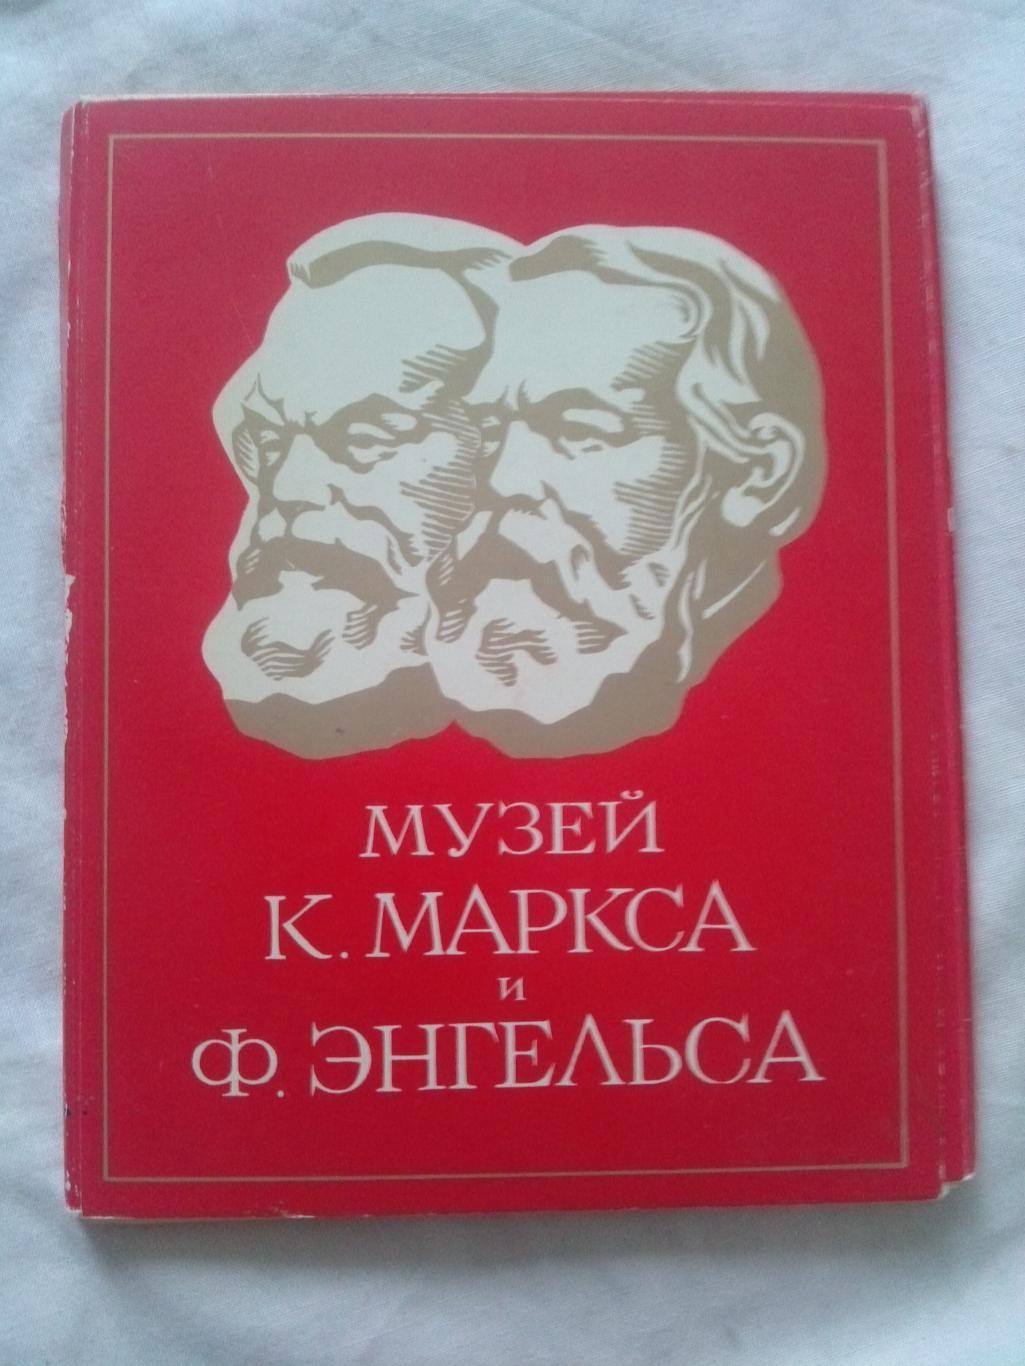 Музей Карла Маркса и Фридриха Энгельса 1980 г. полный набор - 24 открытки